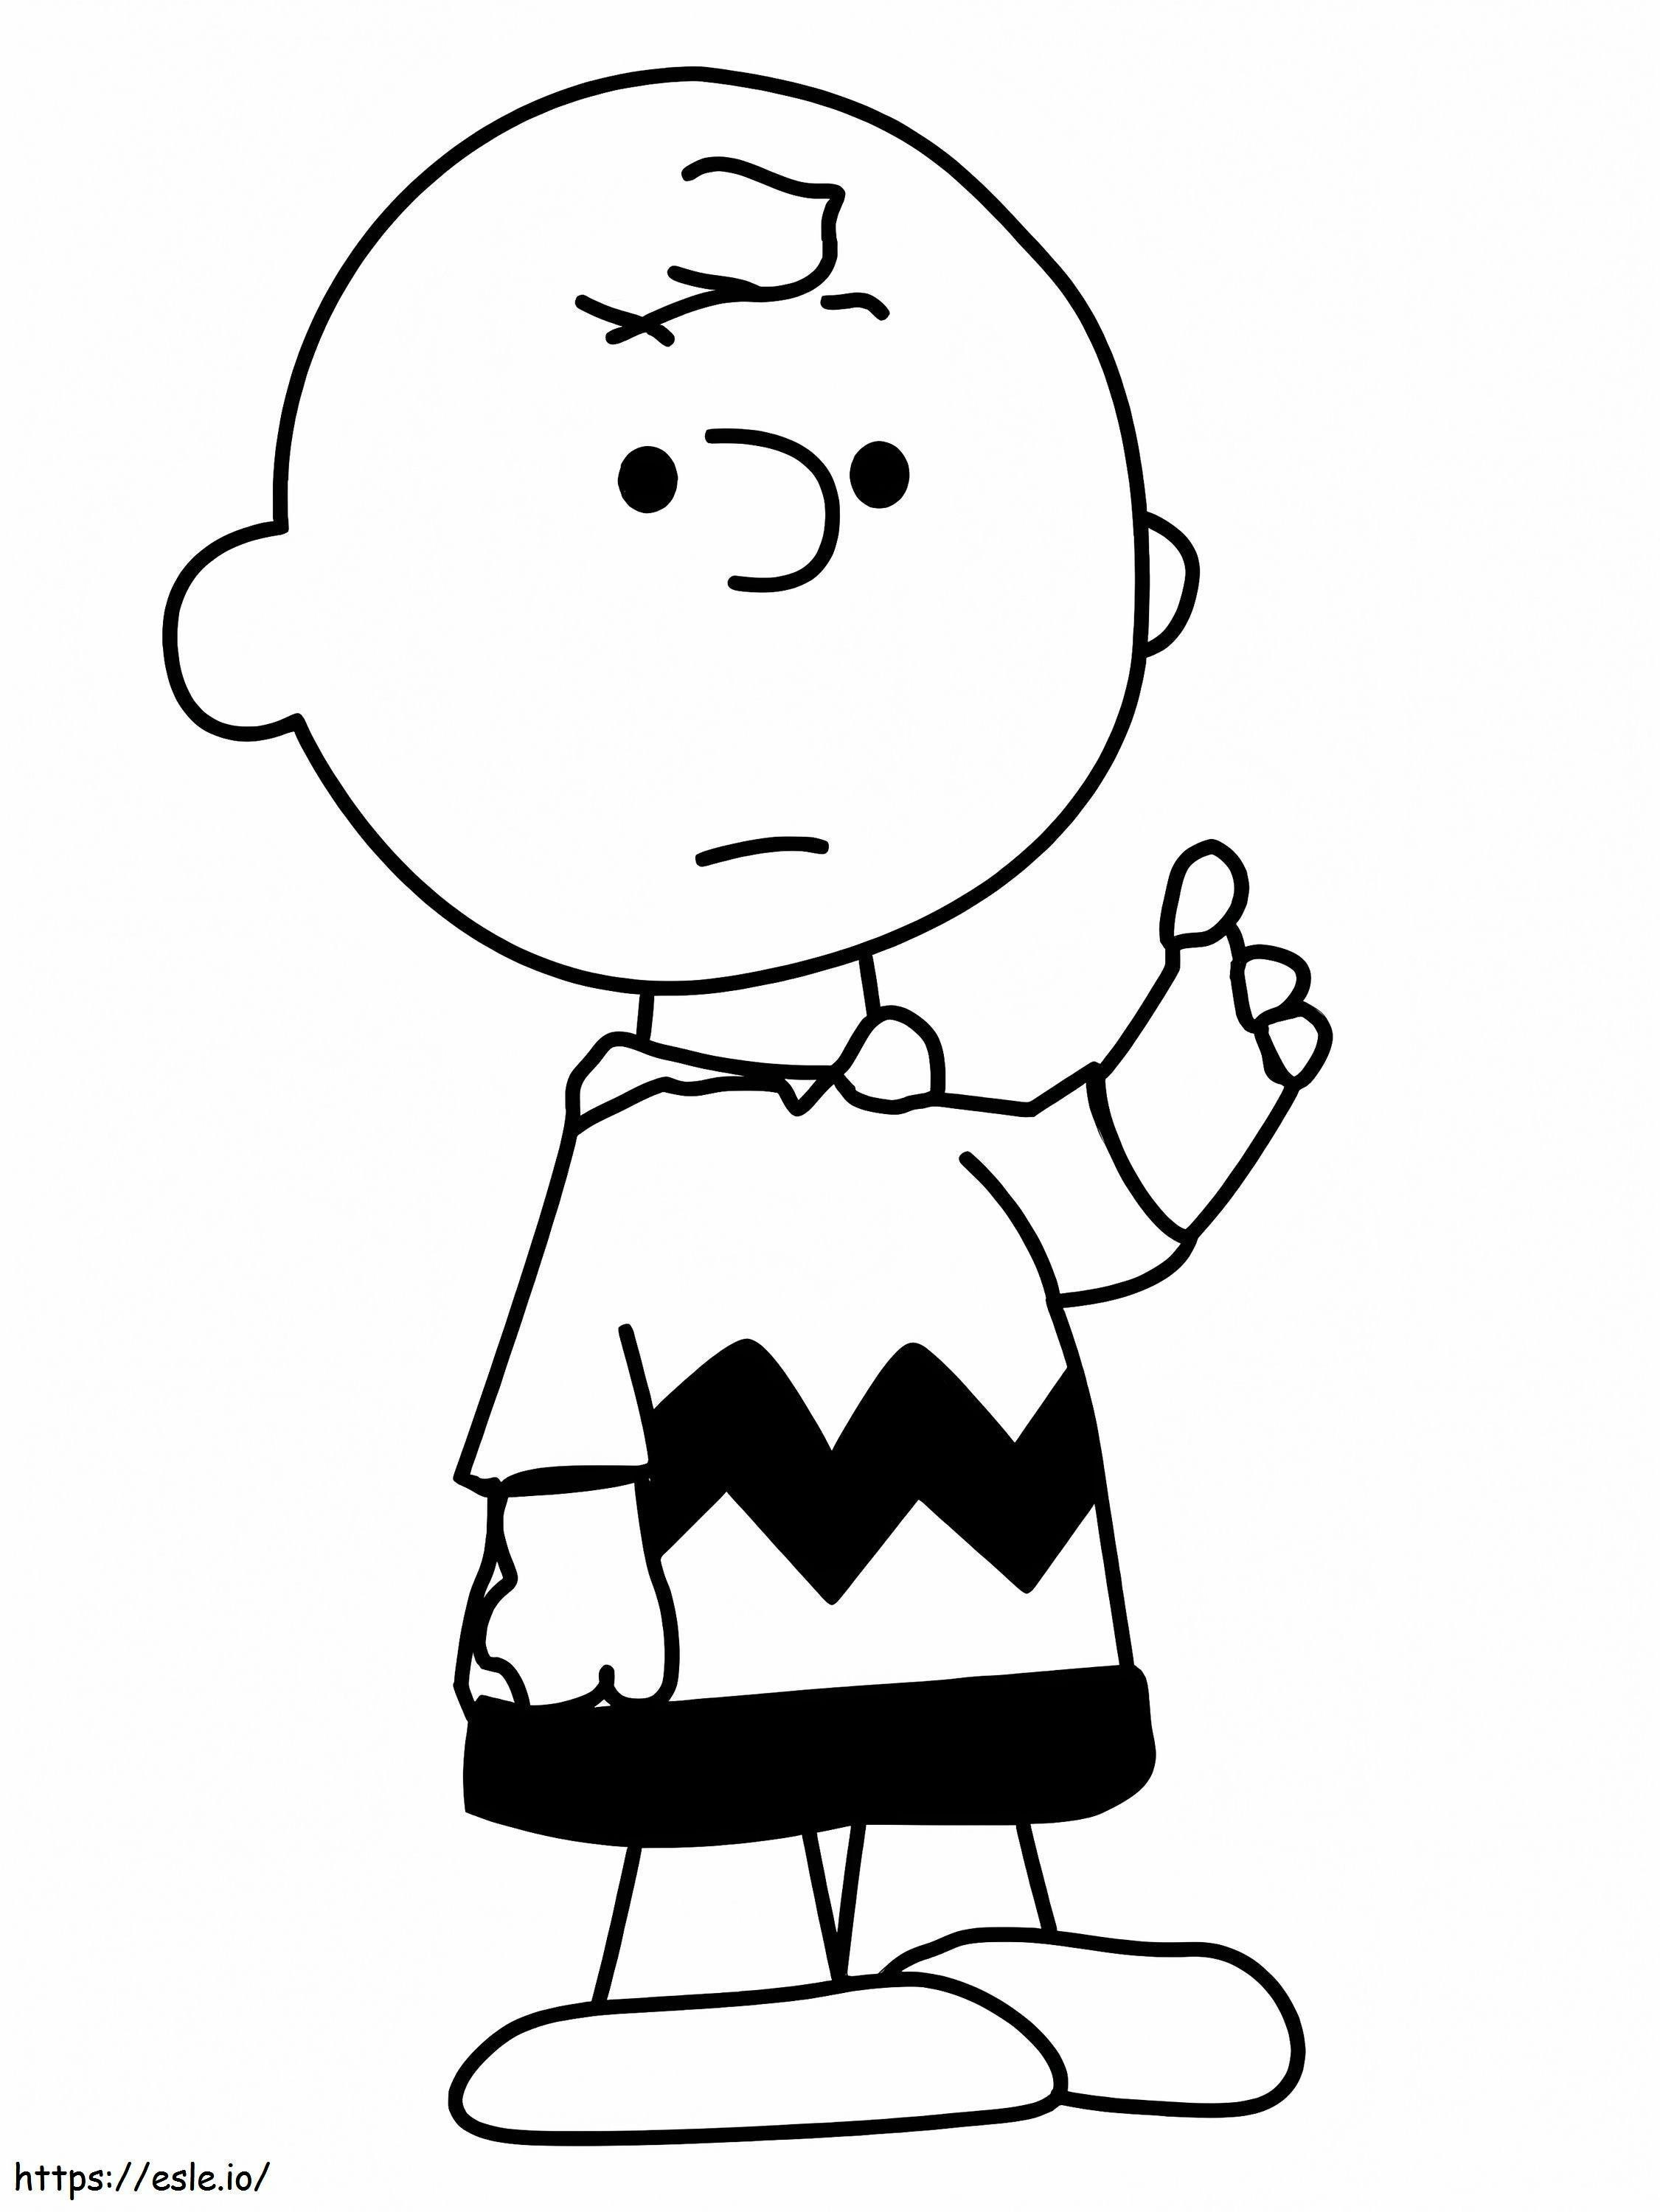 Charlie Brown 1 1 kleurplaat kleurplaat